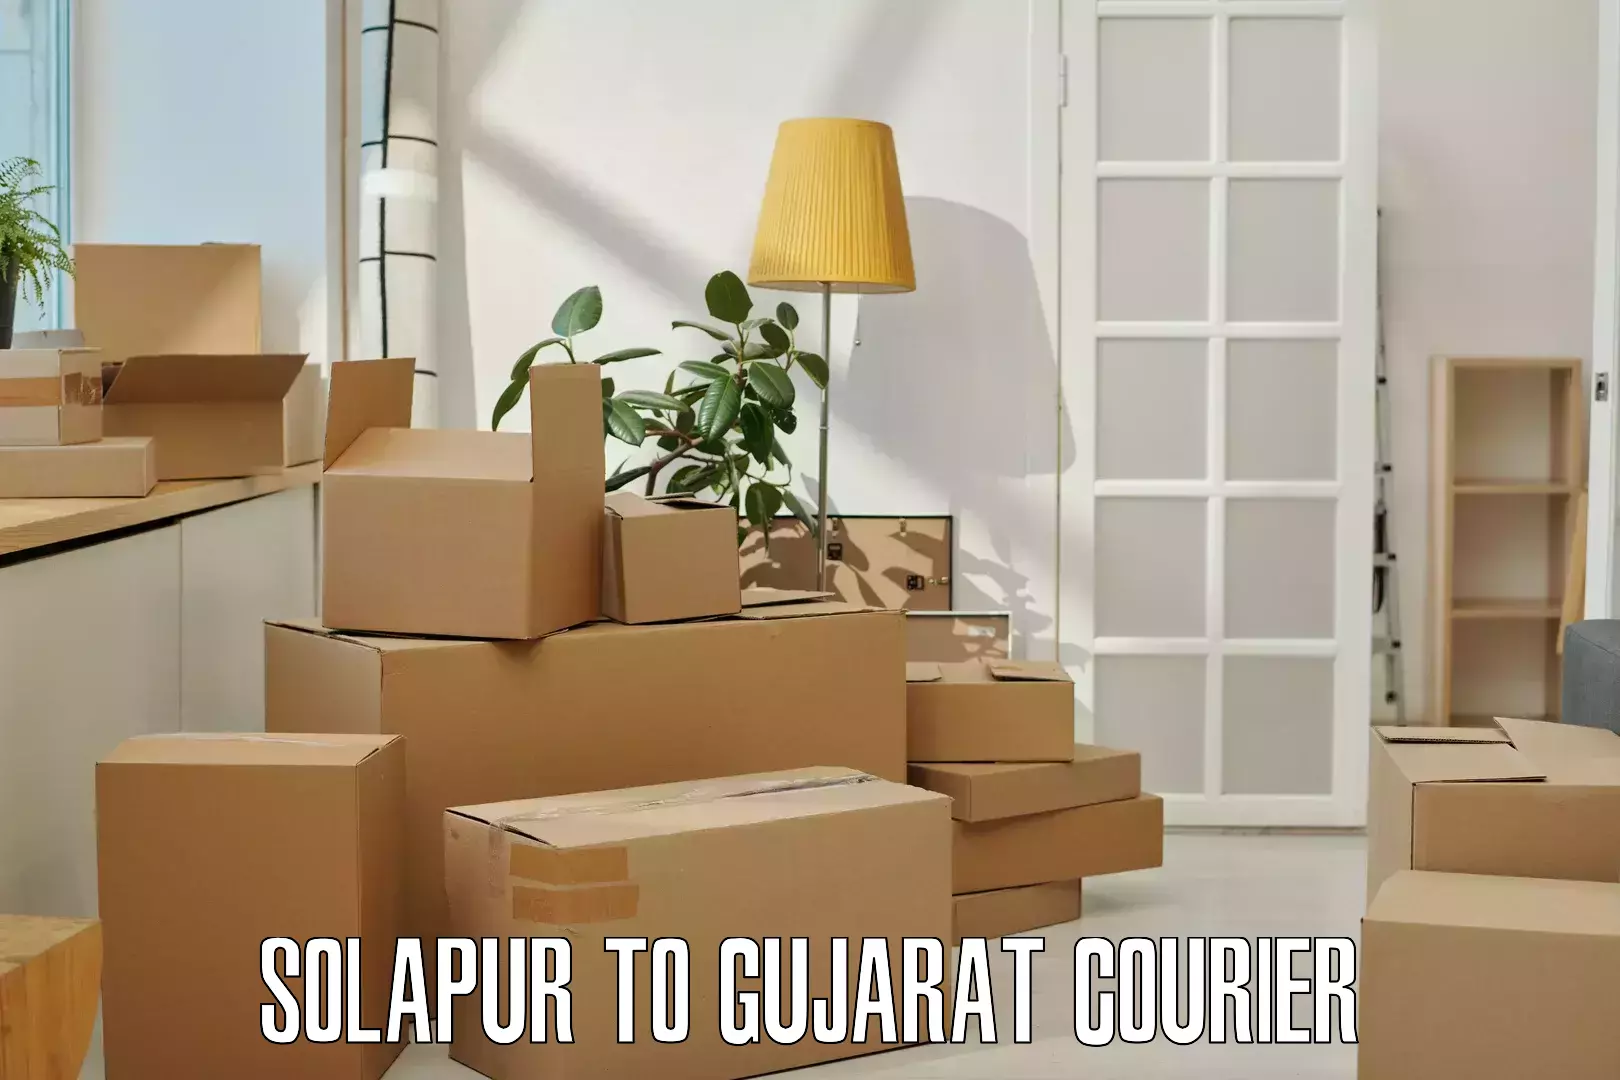 Premium courier services Solapur to Dediapada